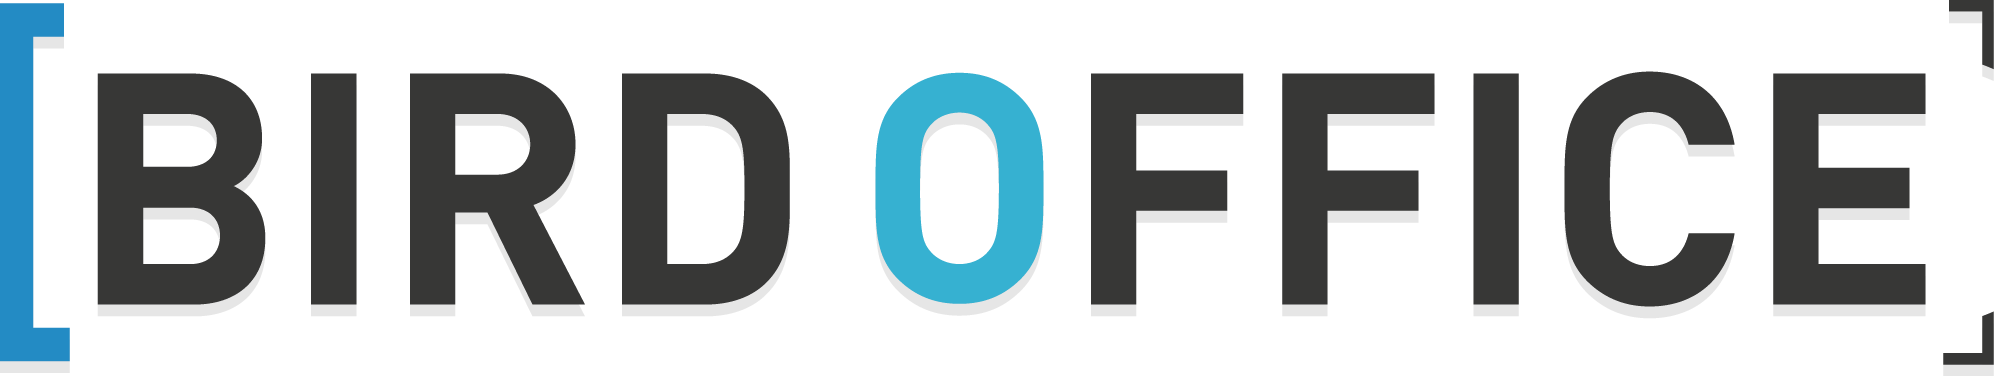 Logo-birdoffice